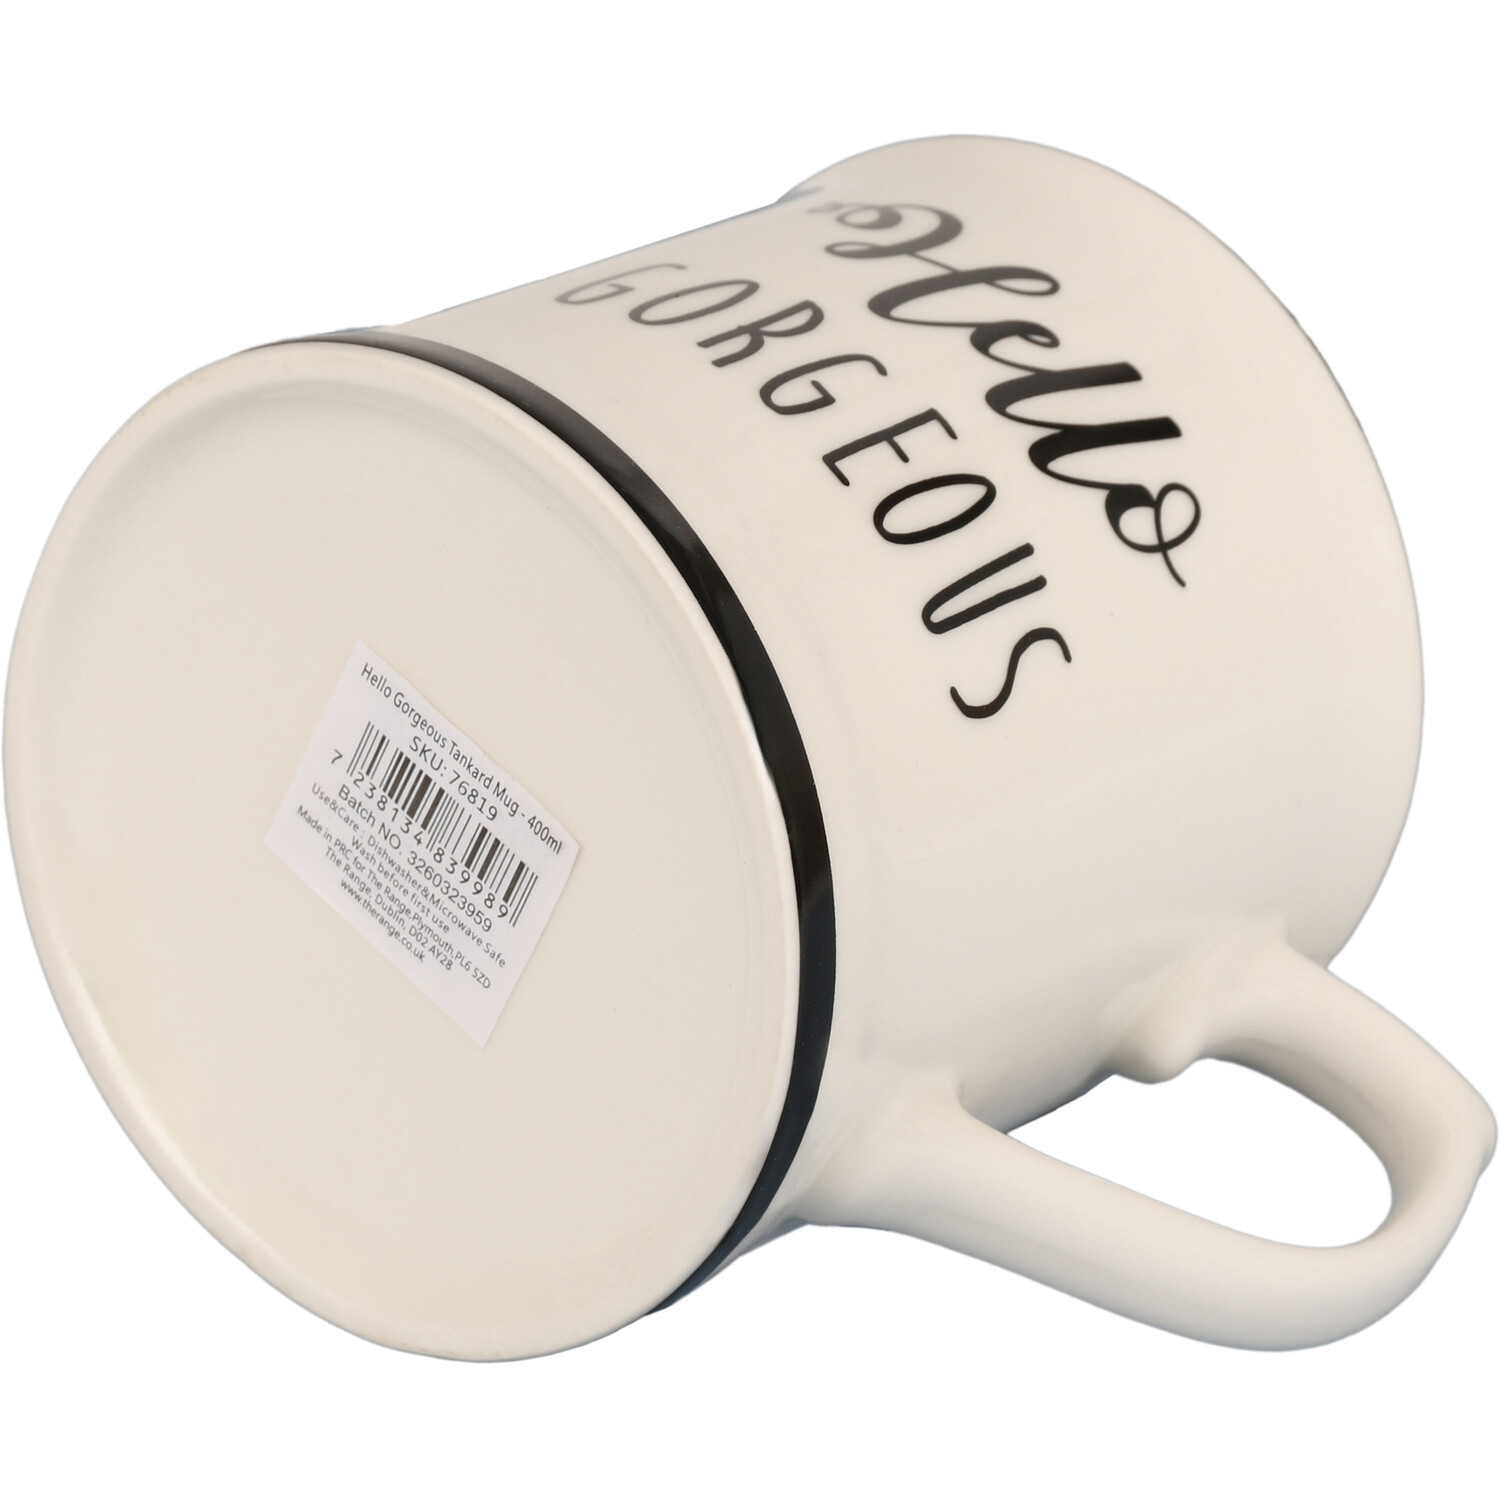 Hello Gorgeous Tankard Mug - White Image 4